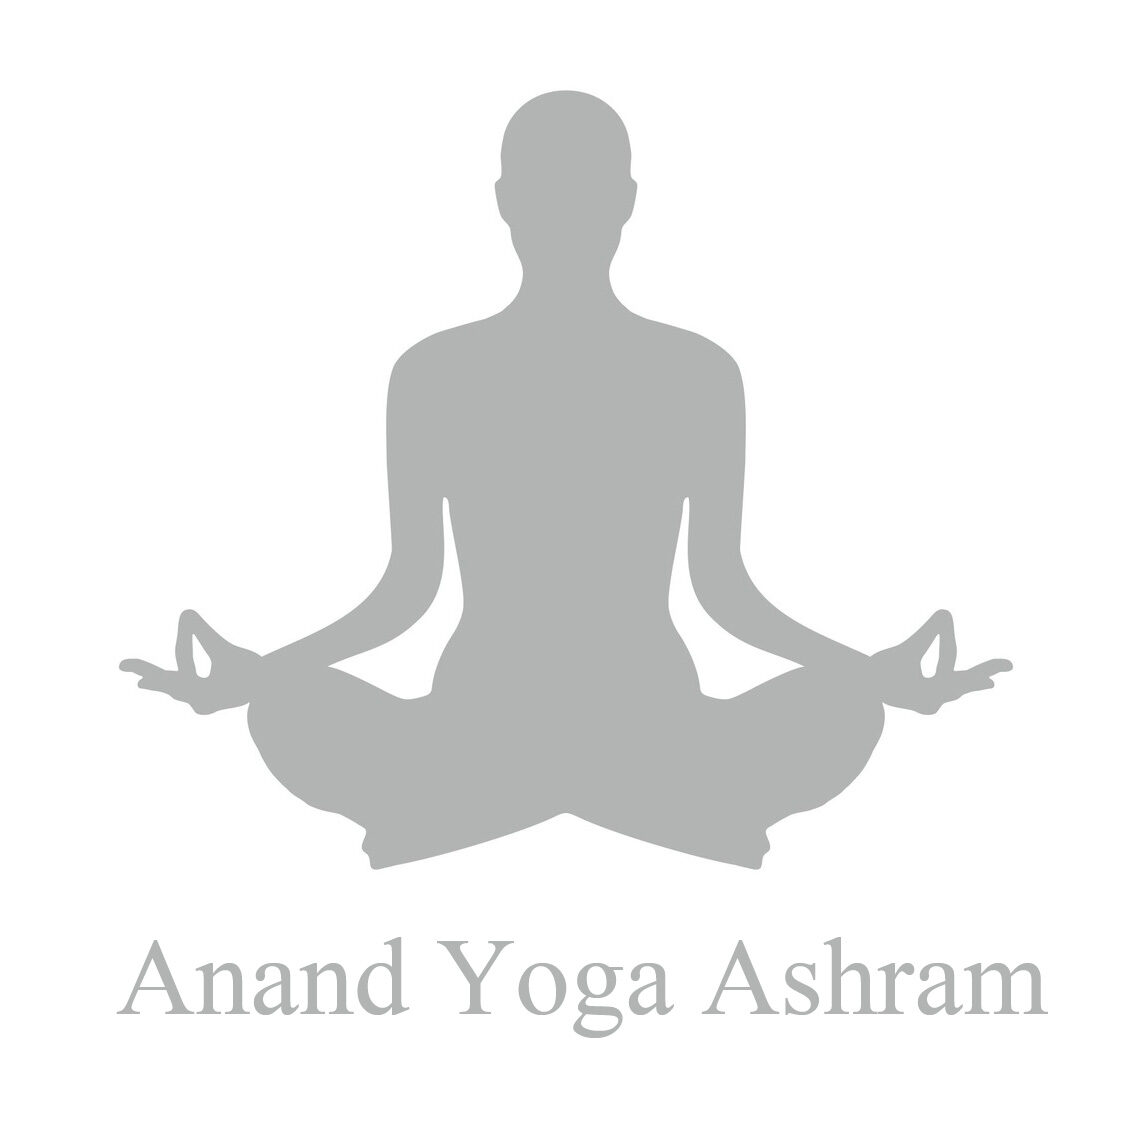 Anand Yoga Ashram